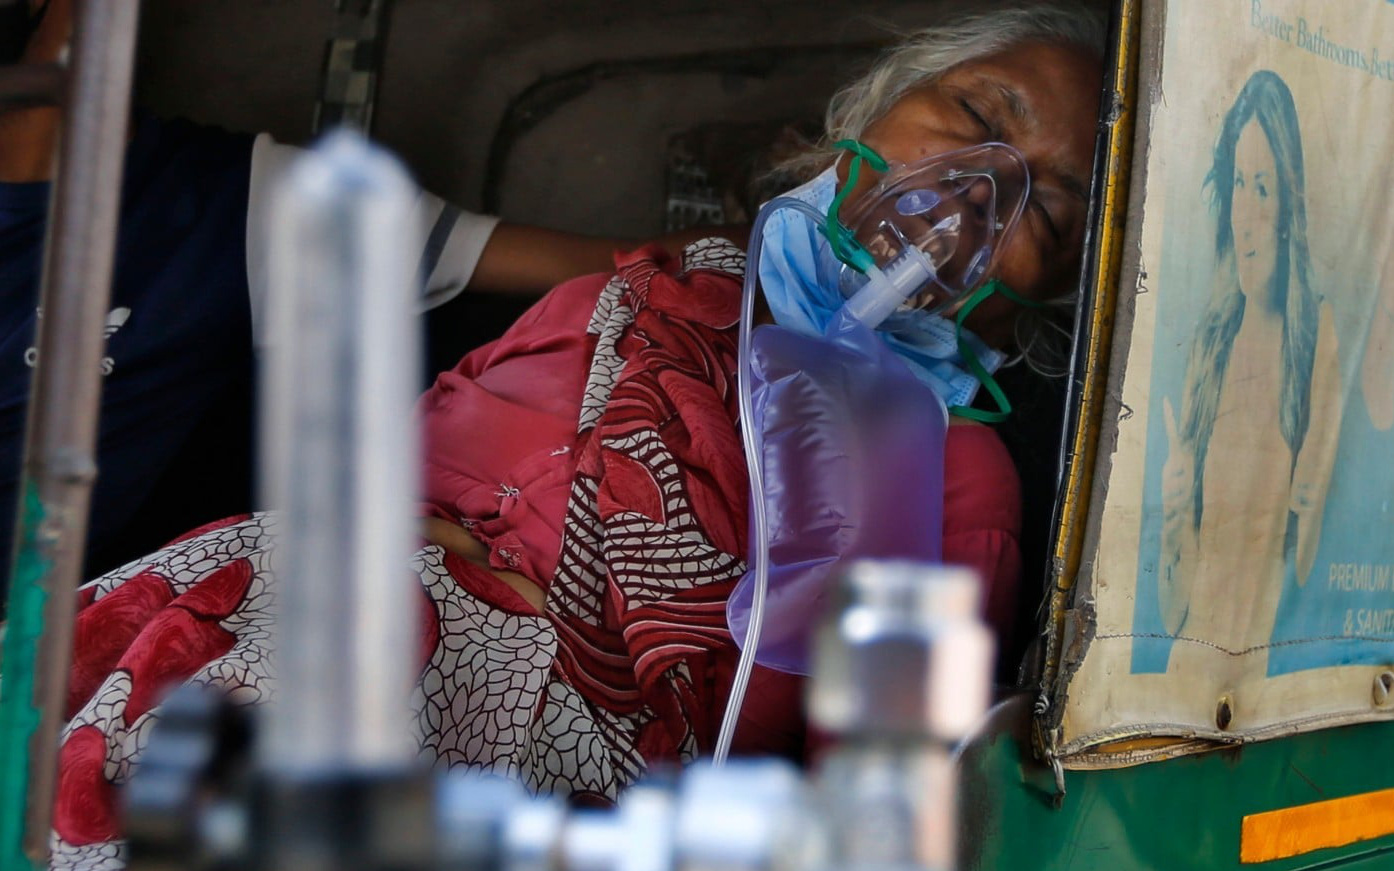 Sau bãi hỏa táng là loạt ảnh bệnh nhân Covid-19 ở Ấn Độ vật vã thở oxy chờ được nhập viện, phản ánh thực trạng thiếu hụt thiết bị y tế nhức nhối